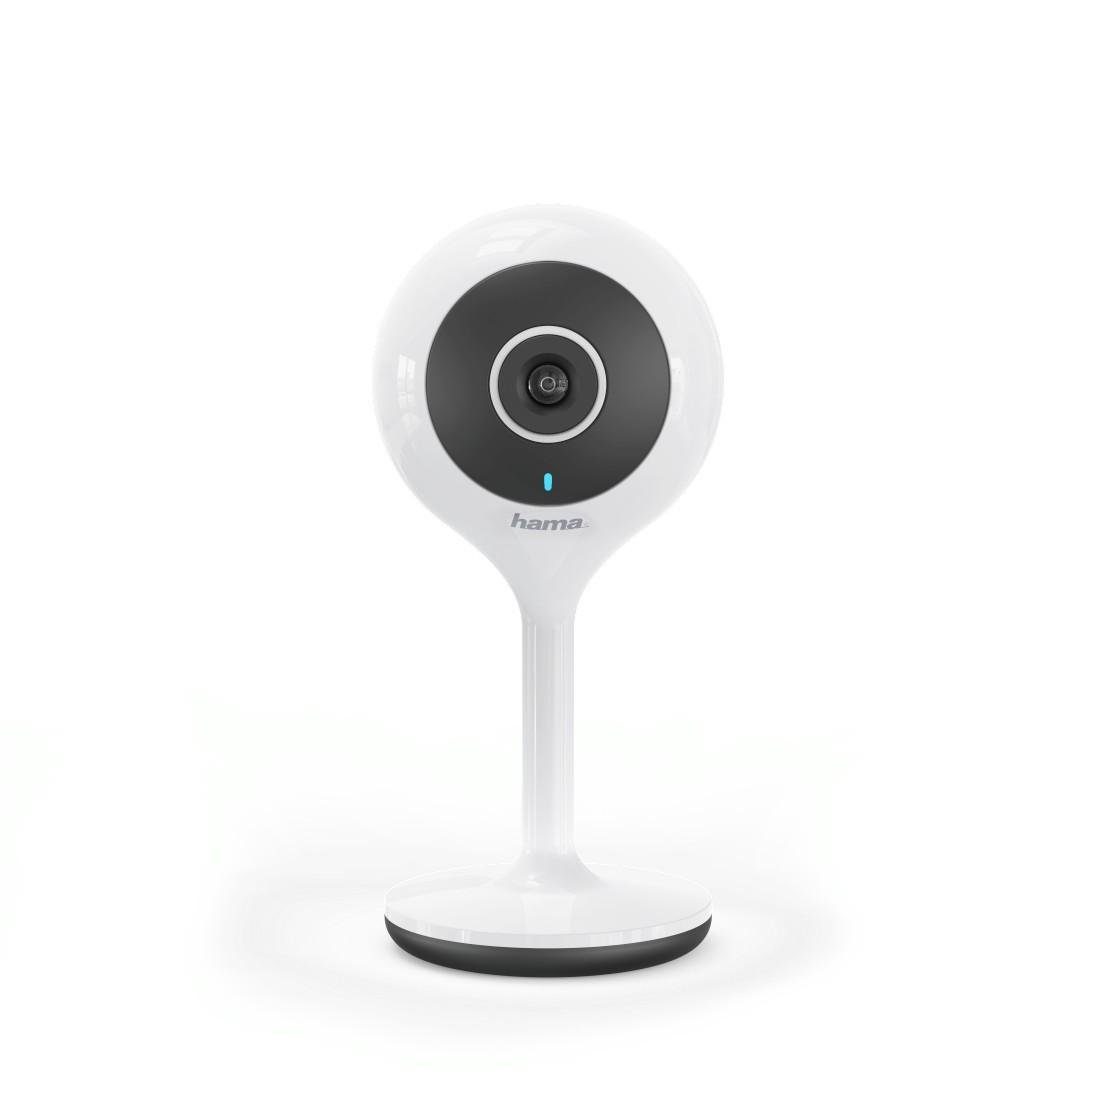 Hama »Webcam WiFi-Kamera 1080P« Smart Home Kamera (Bewegungssensor,  Nachtsichtfunktion, Audiosensor, WLAN-Kamera, geeignet für Sprachassistent,  Erfassungswinkel: 110) online kaufen | OTTO